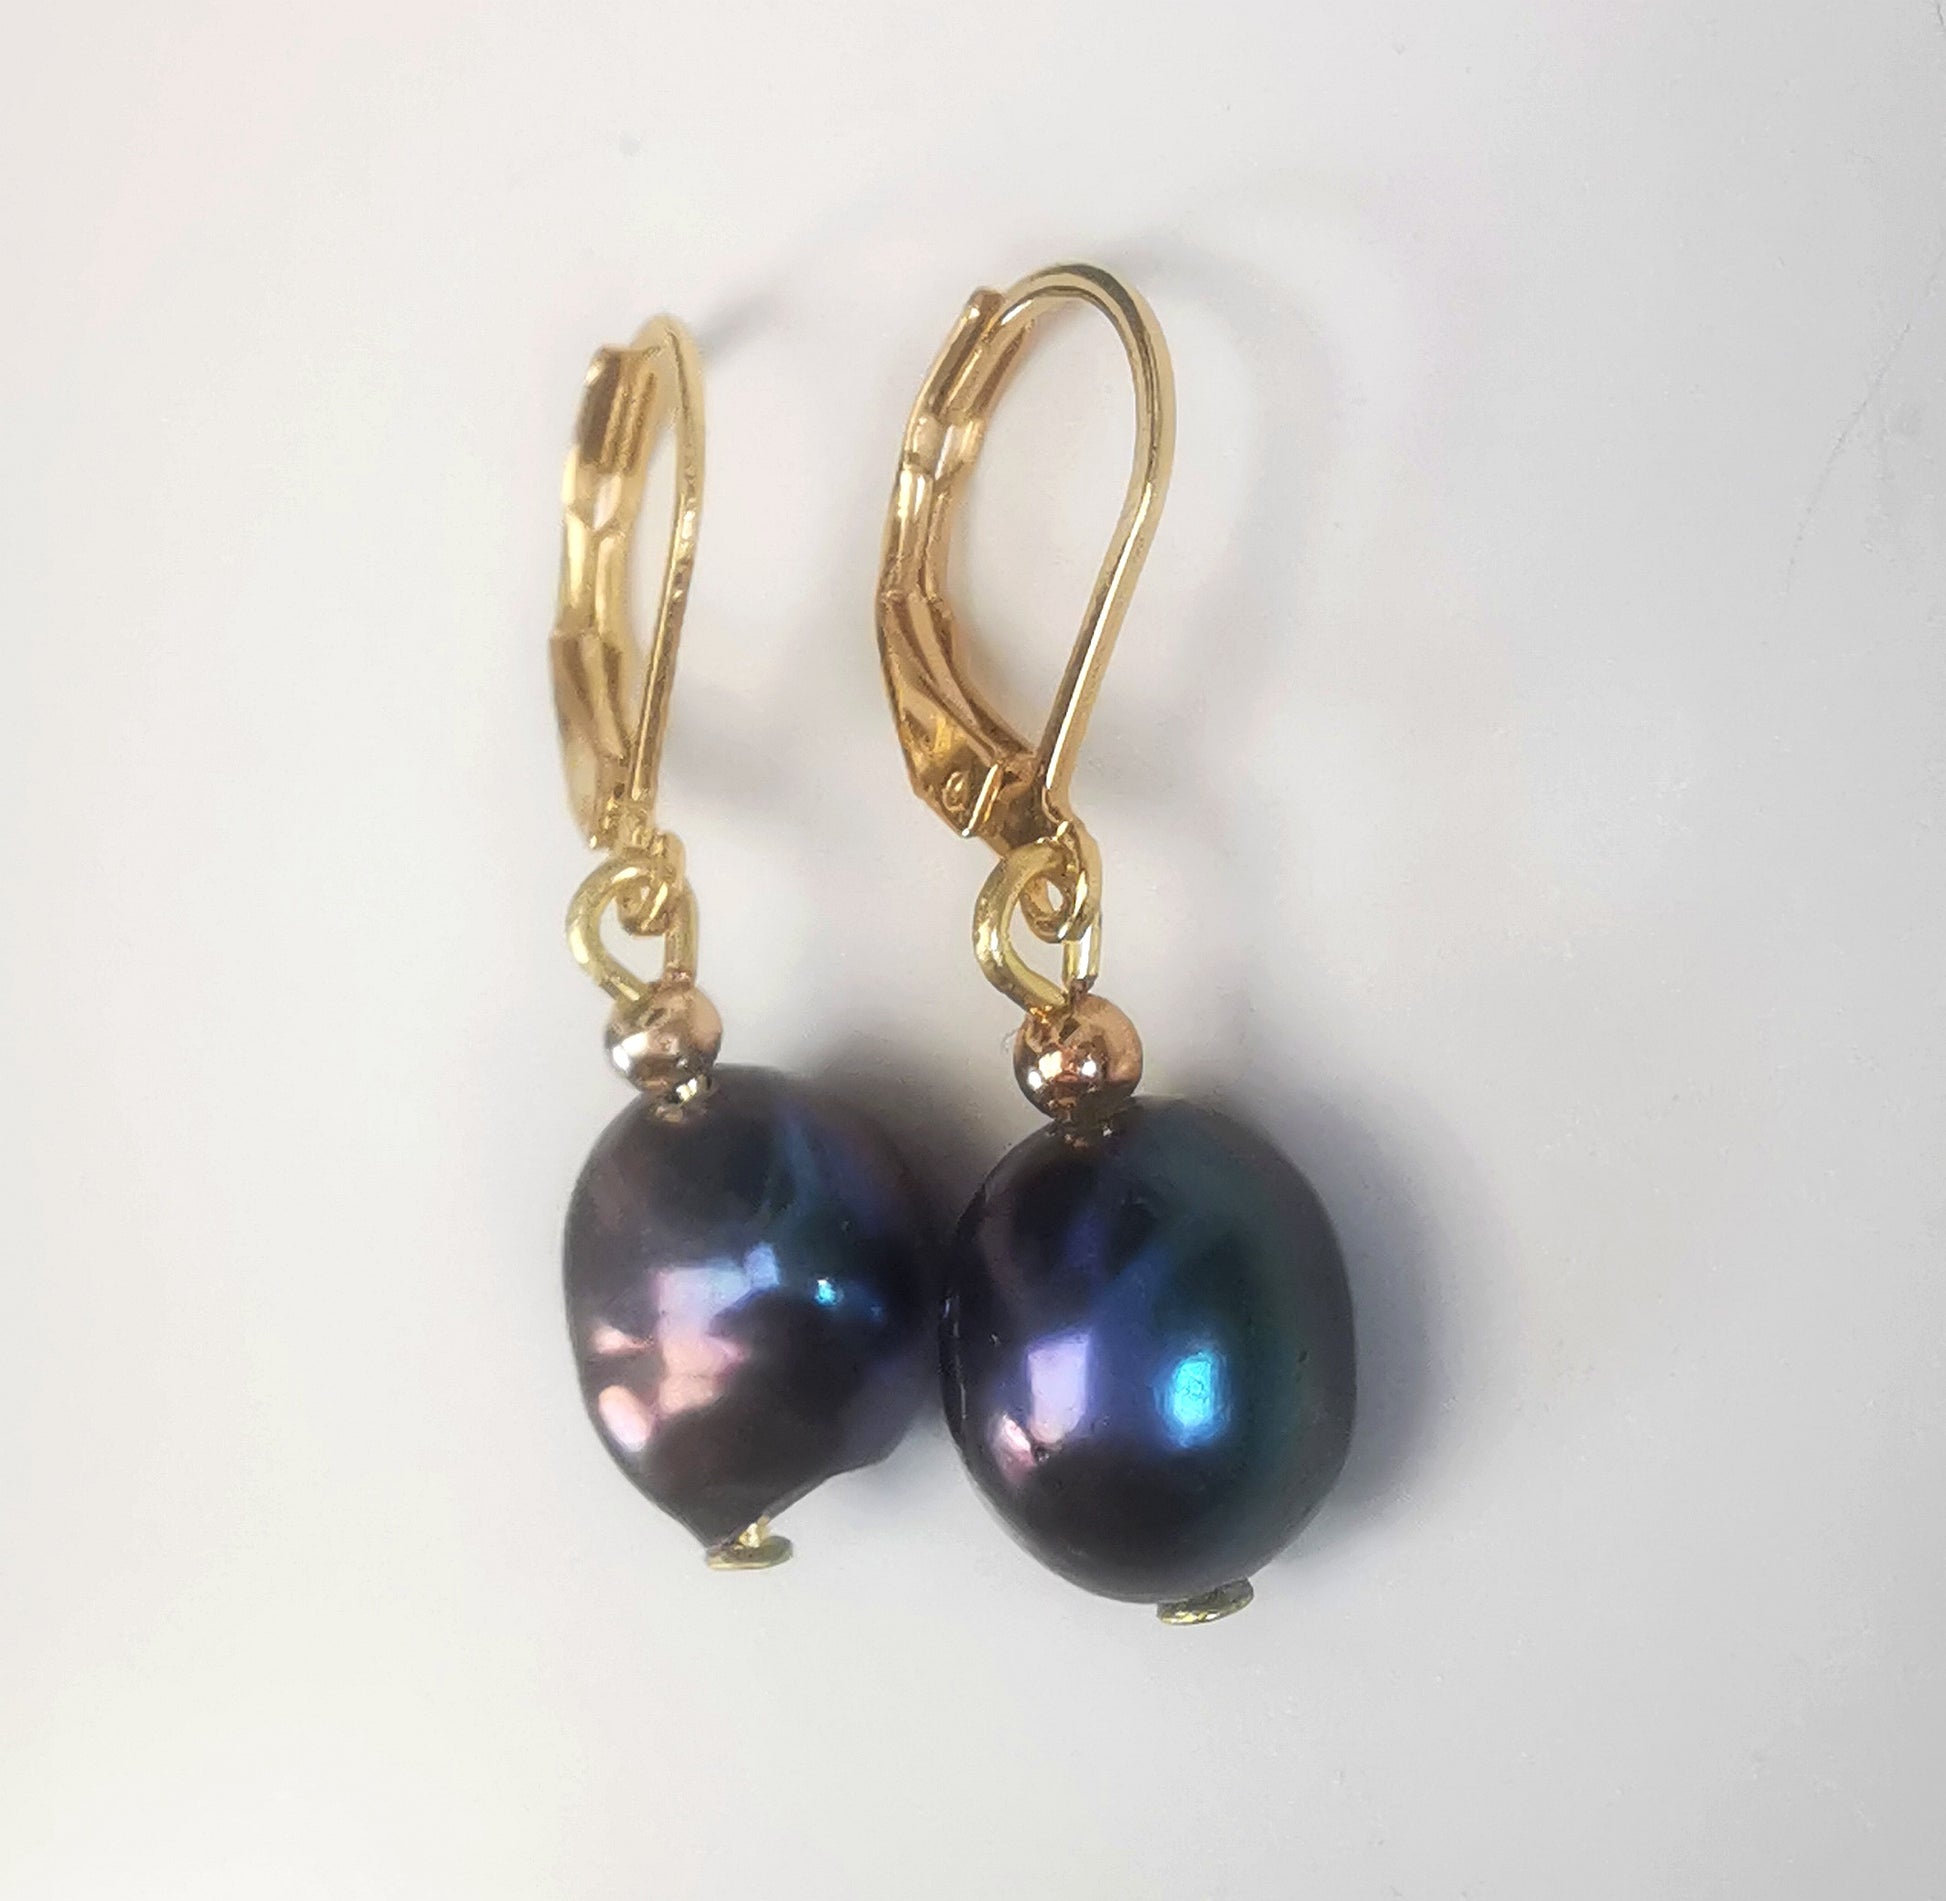 Boucles d'oreilles perles de culture noires baroques 10-12mm montées sur dormeuses plaquées or. Présentées cote à cote, perles en bas, sur un fond blanc. Vue de droite.